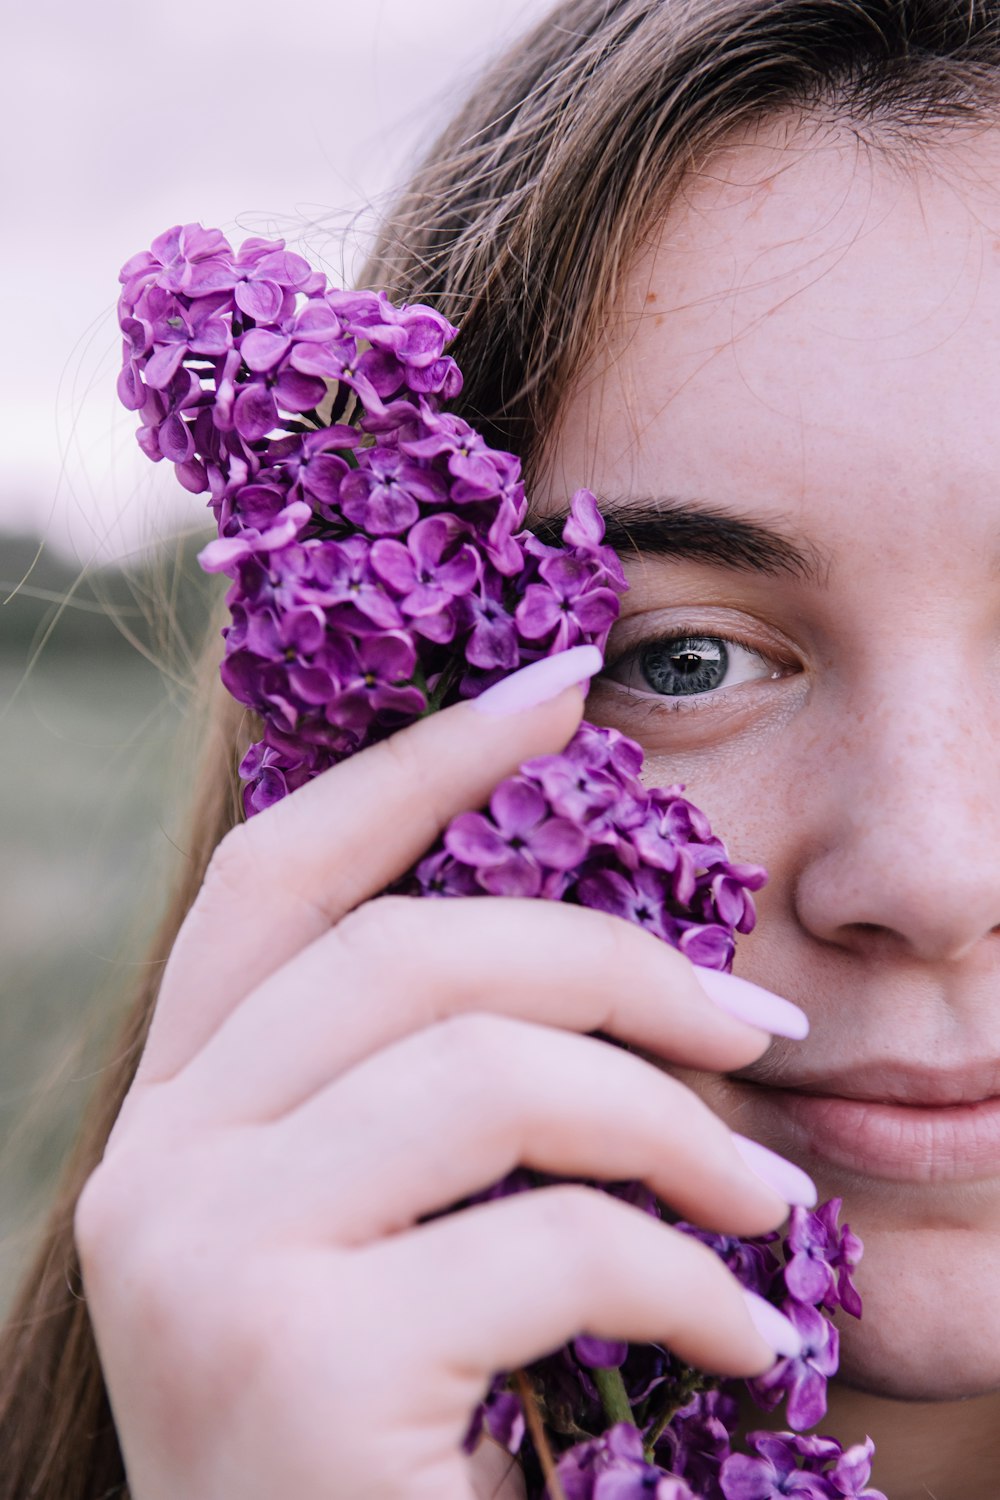 クローズアップ写真で紫色の花を保持している女性